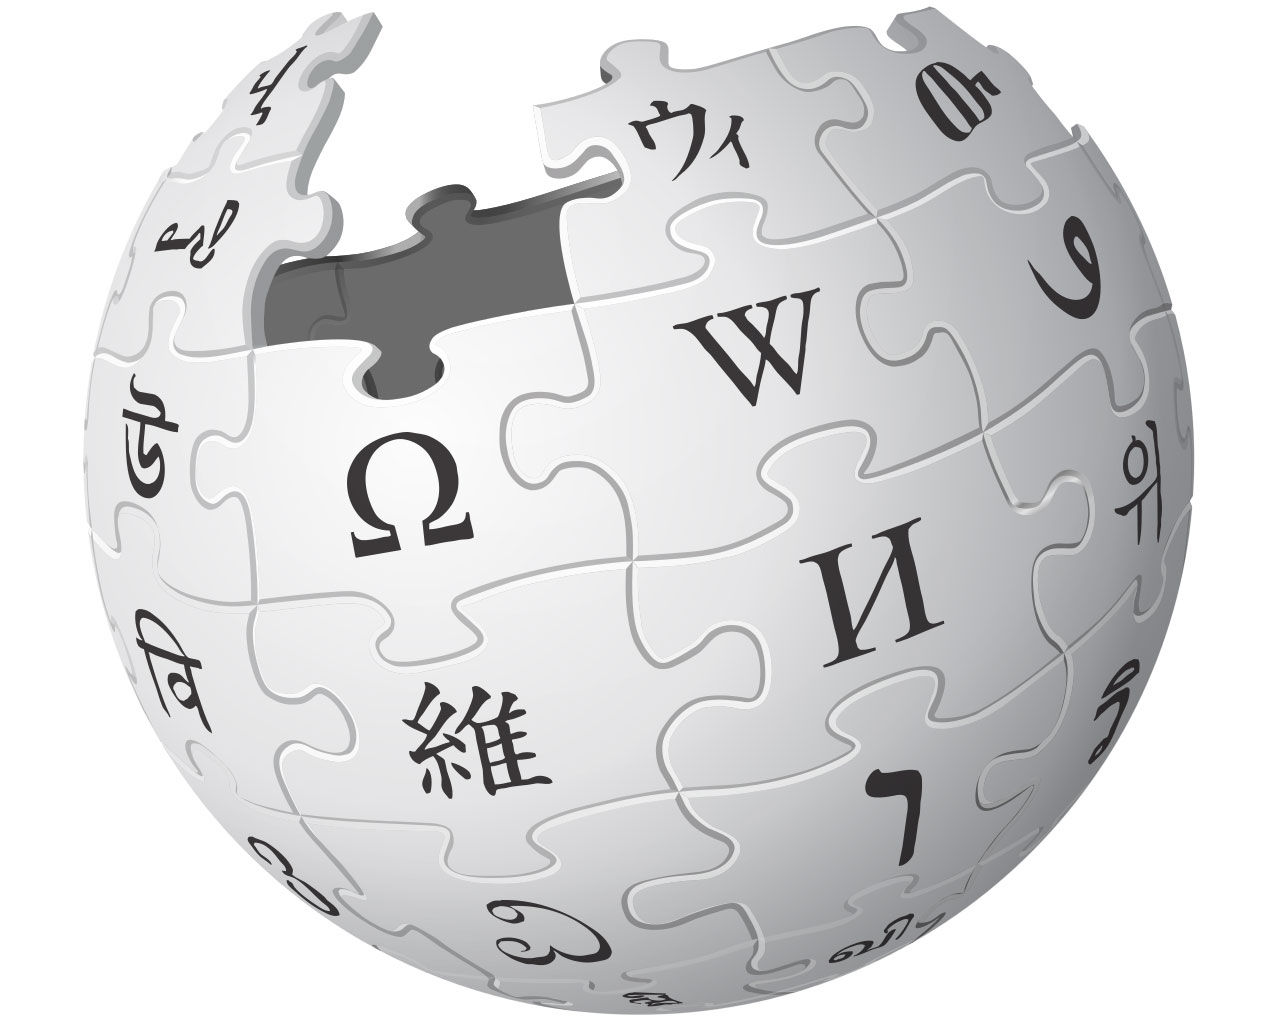 Dejting Wikipedia Uppslagsverk